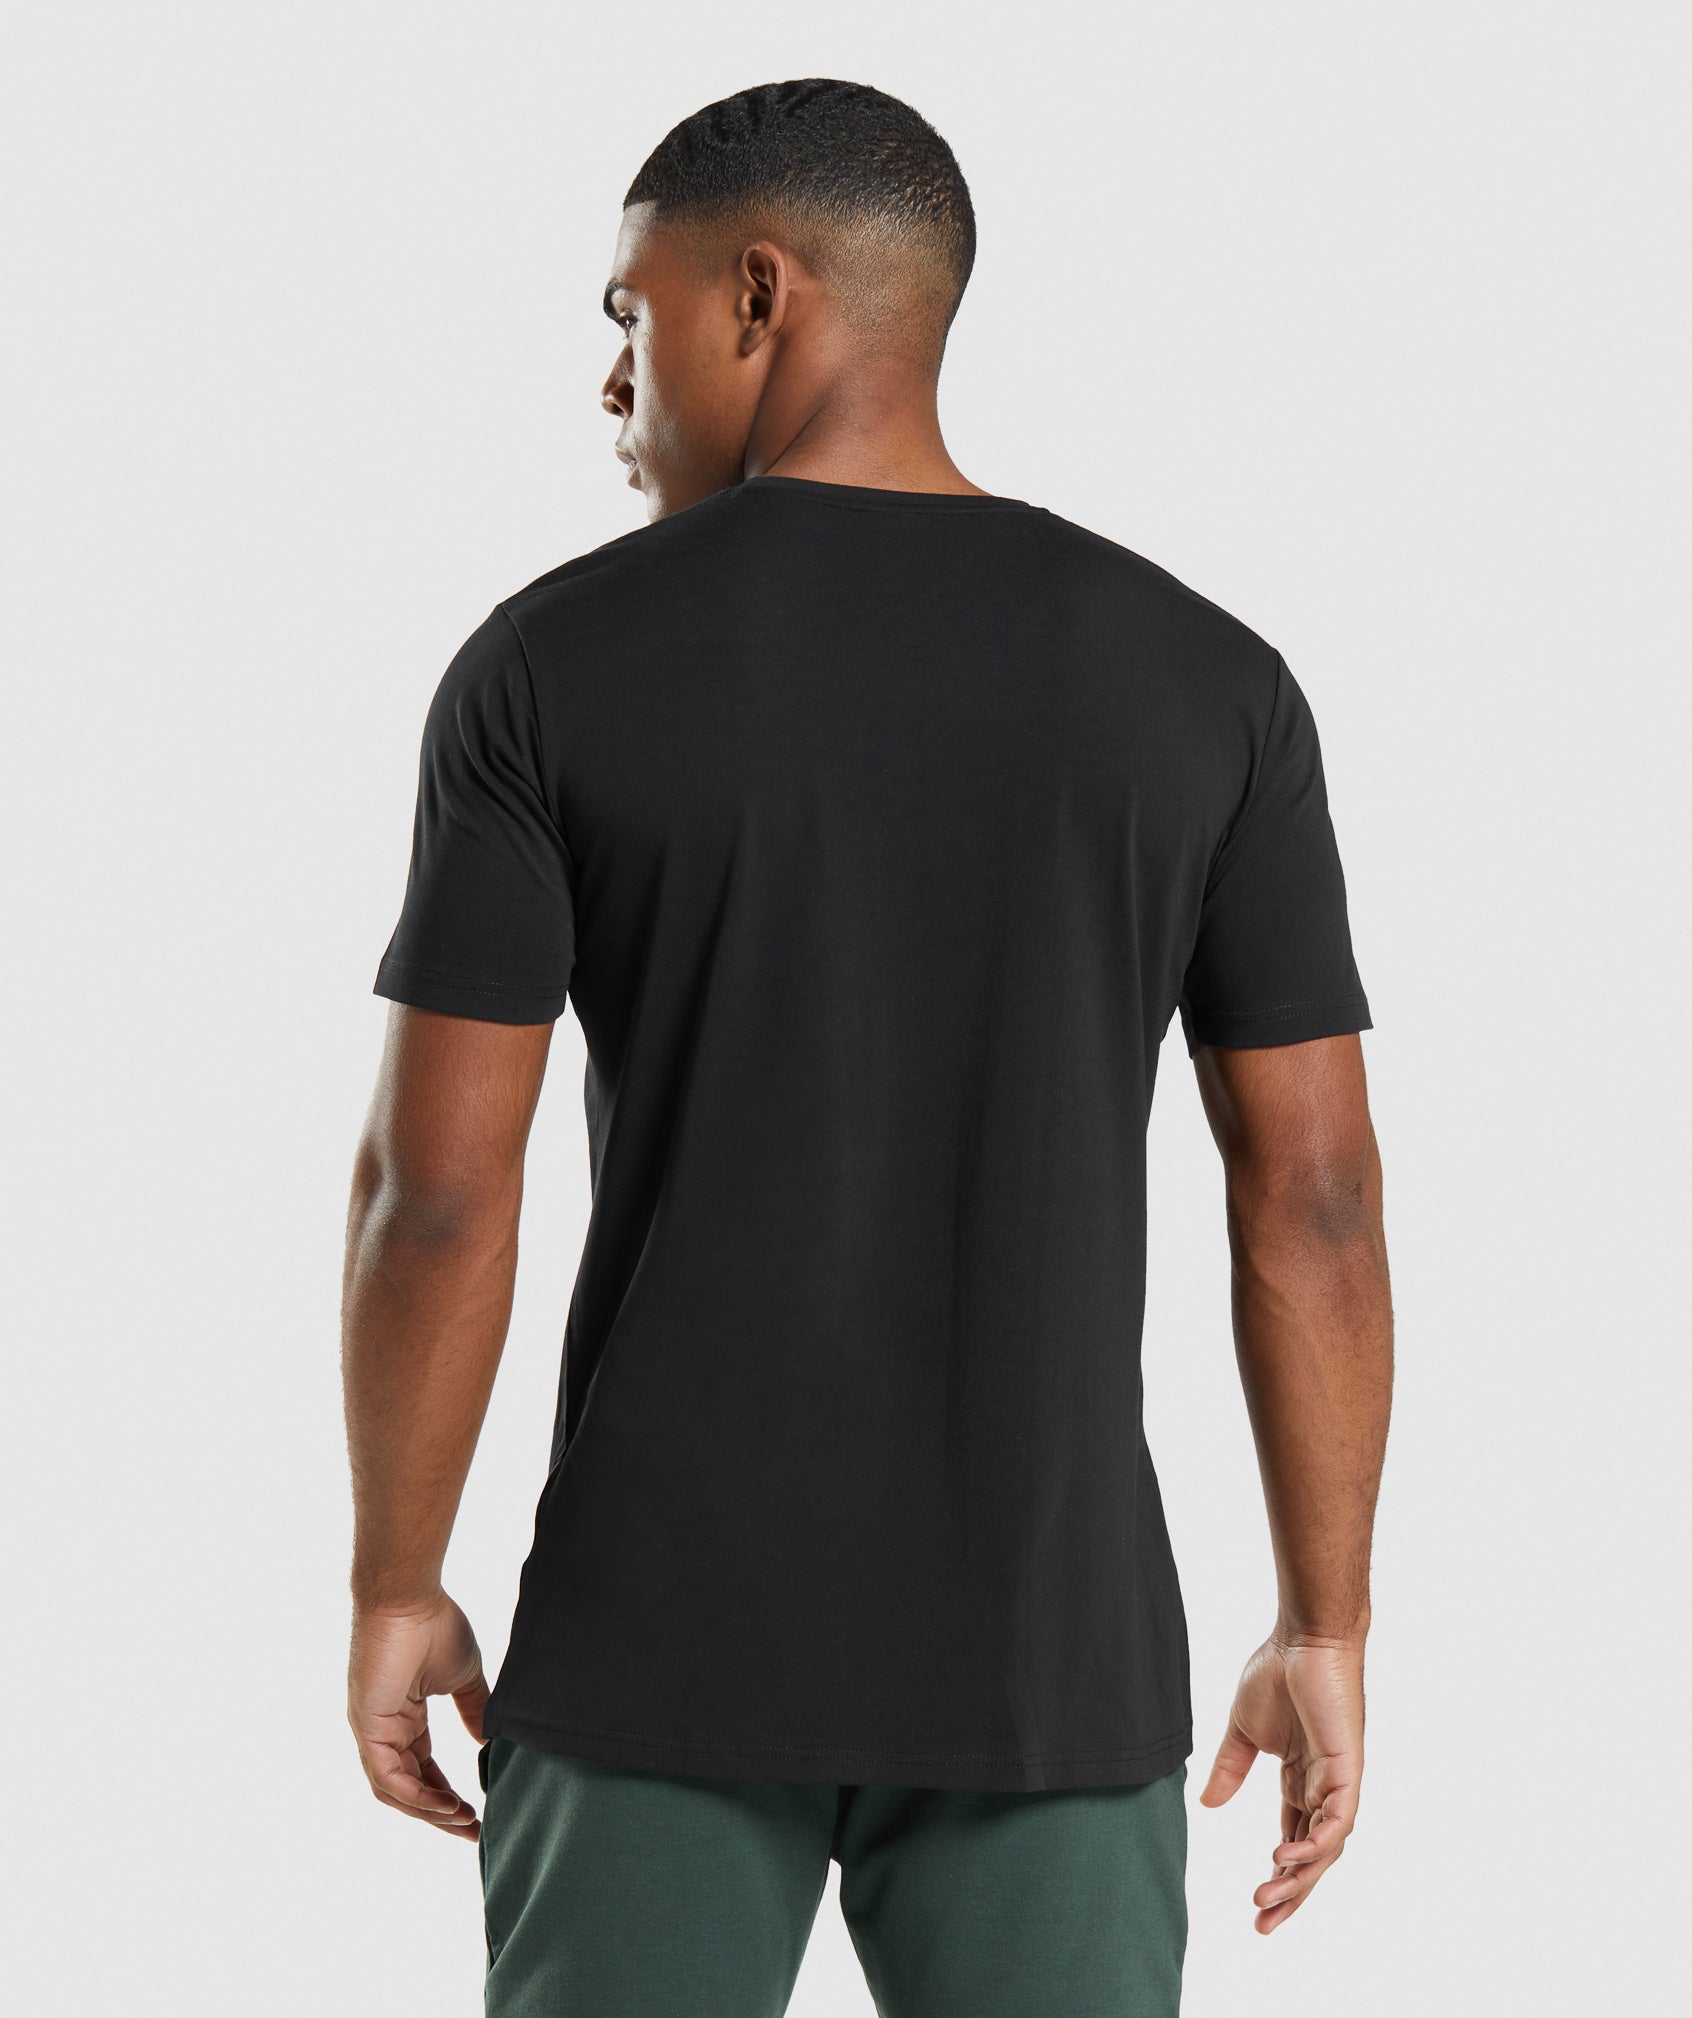 Gymshark Critical T-Shirt - Black | Gymshark